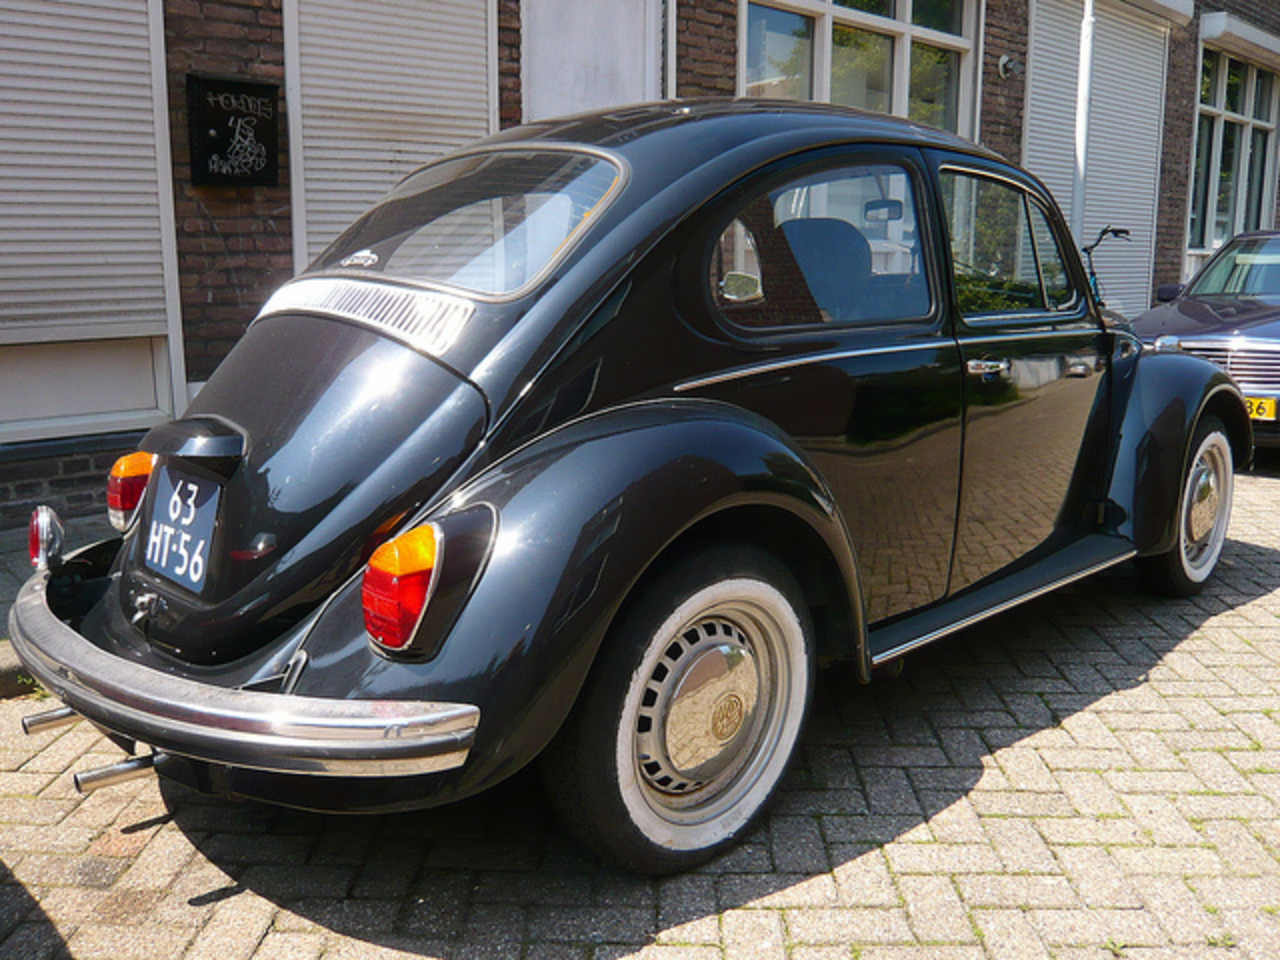 Volkswagen 111011 Beetle - 1976 | Flickr - Photo Sharing!